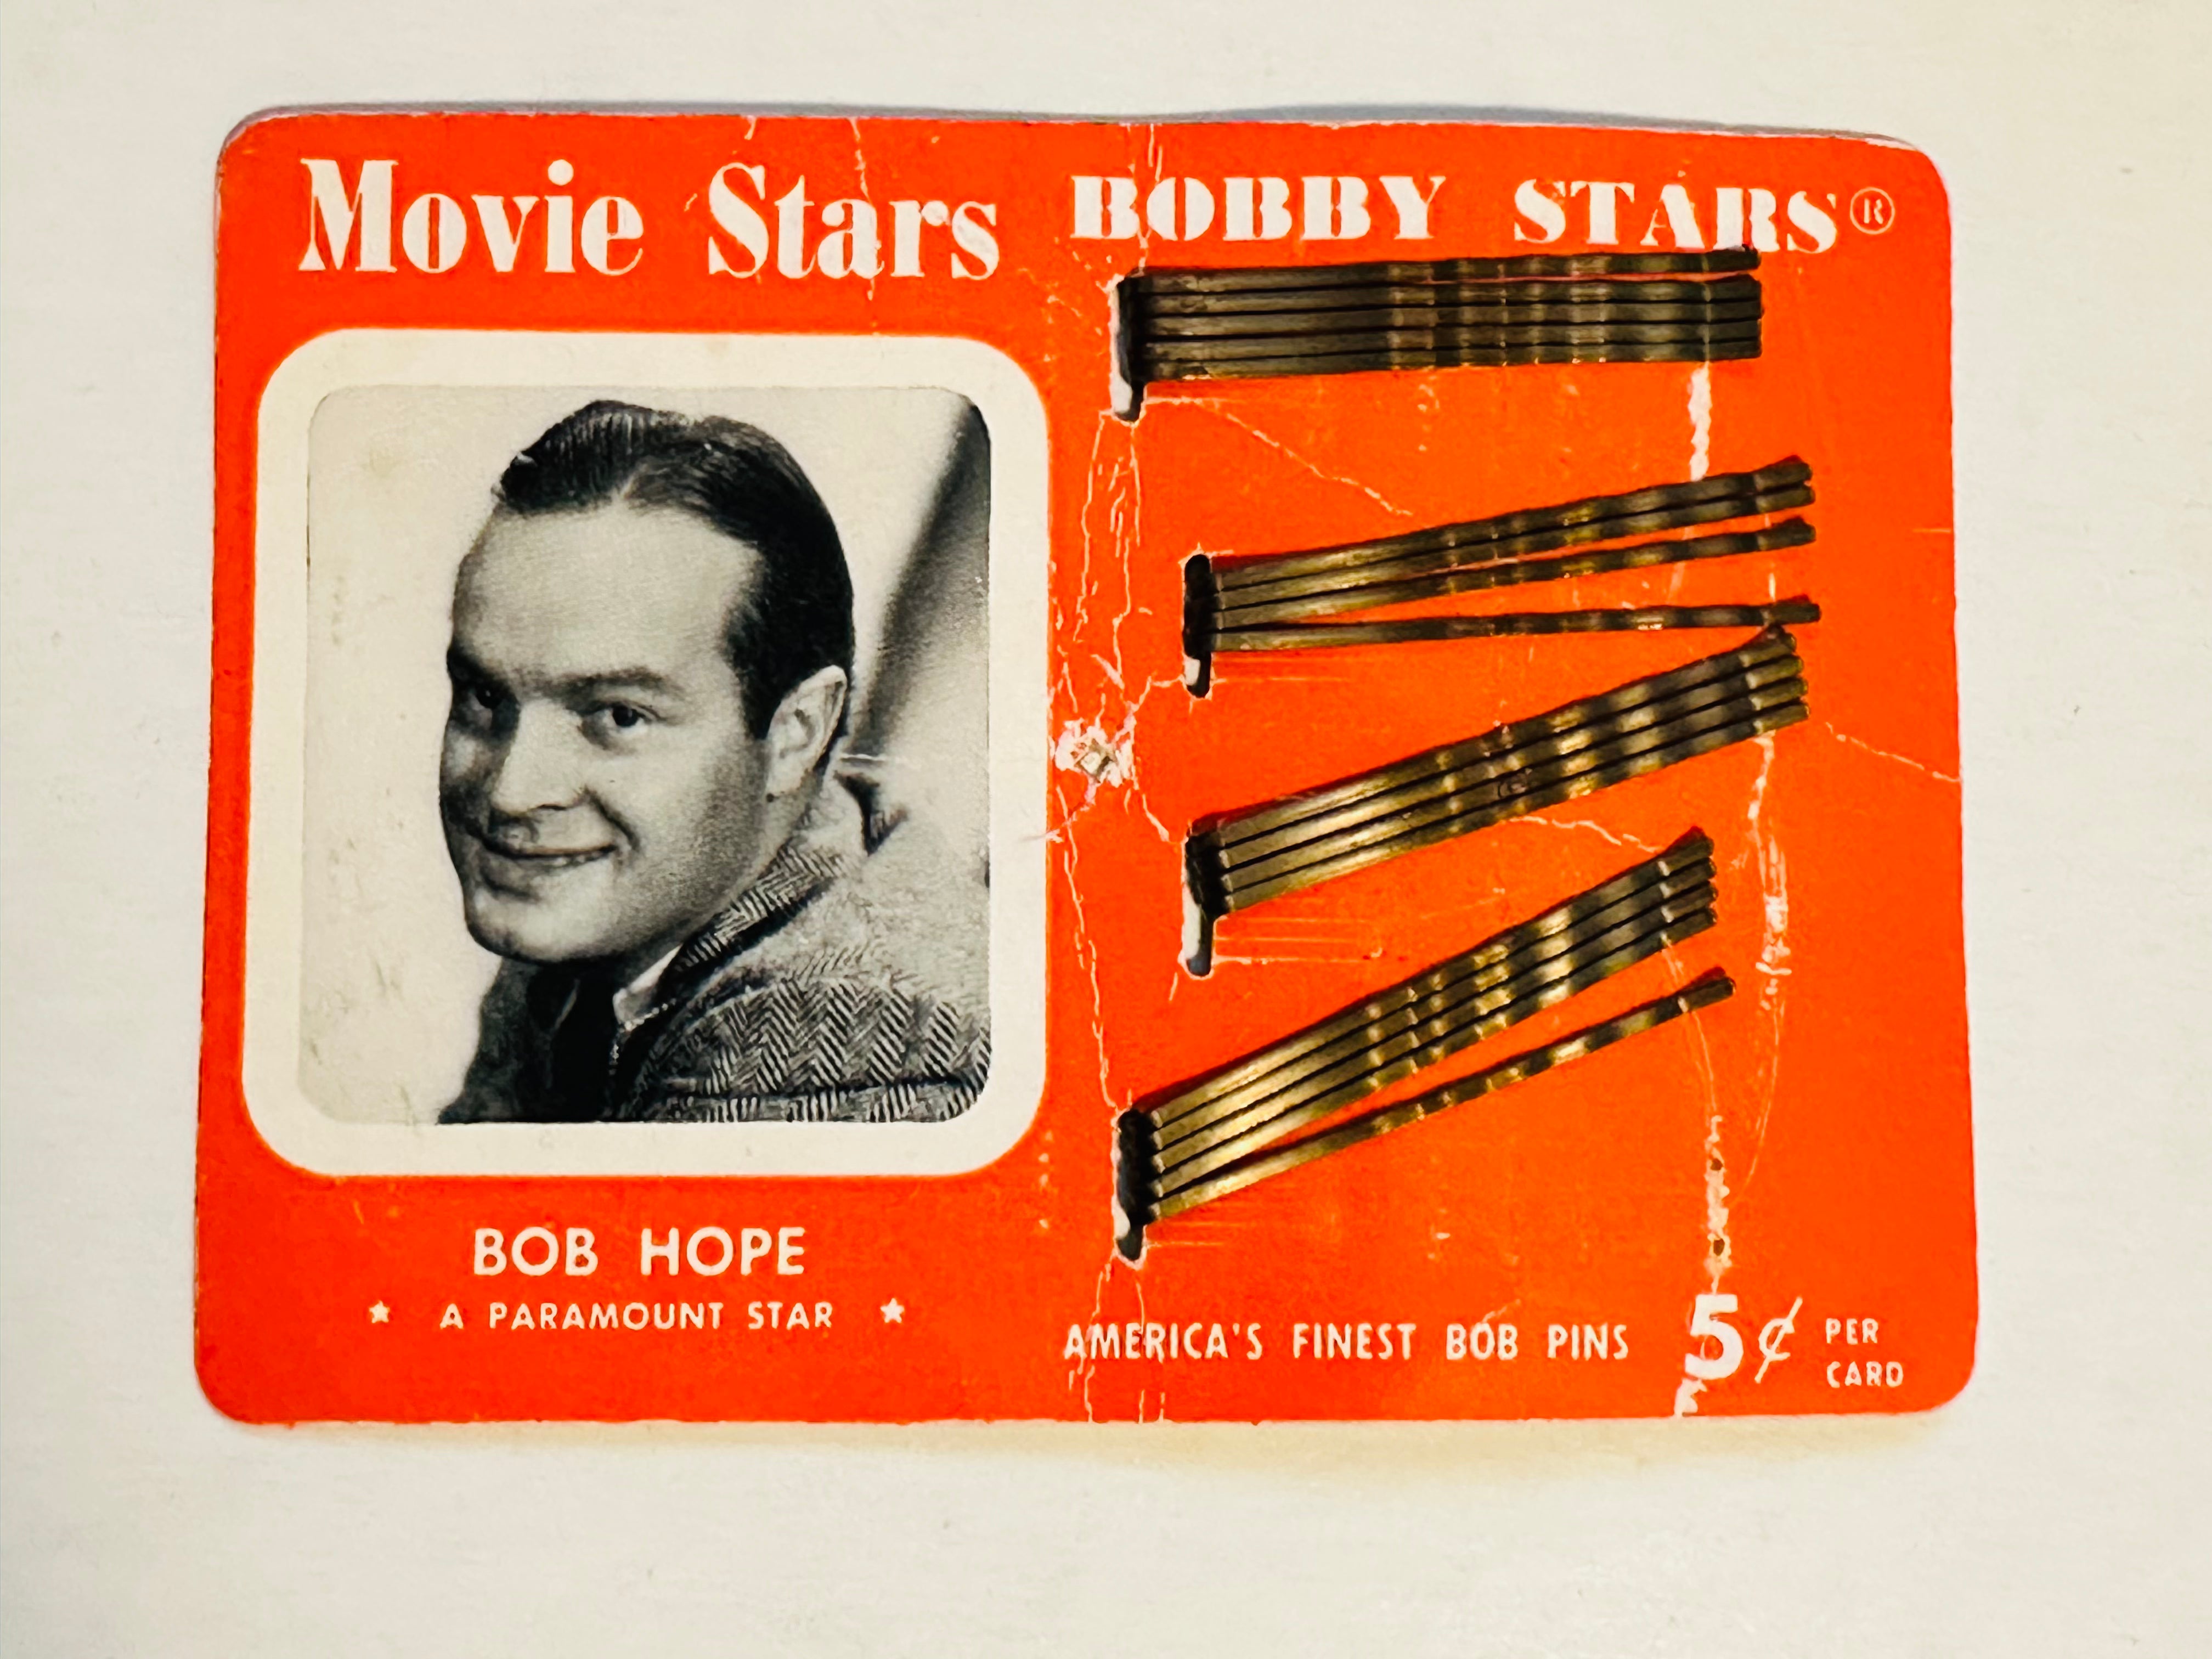 Bob Hope rare Bobby pins display cardboard ad 1950s